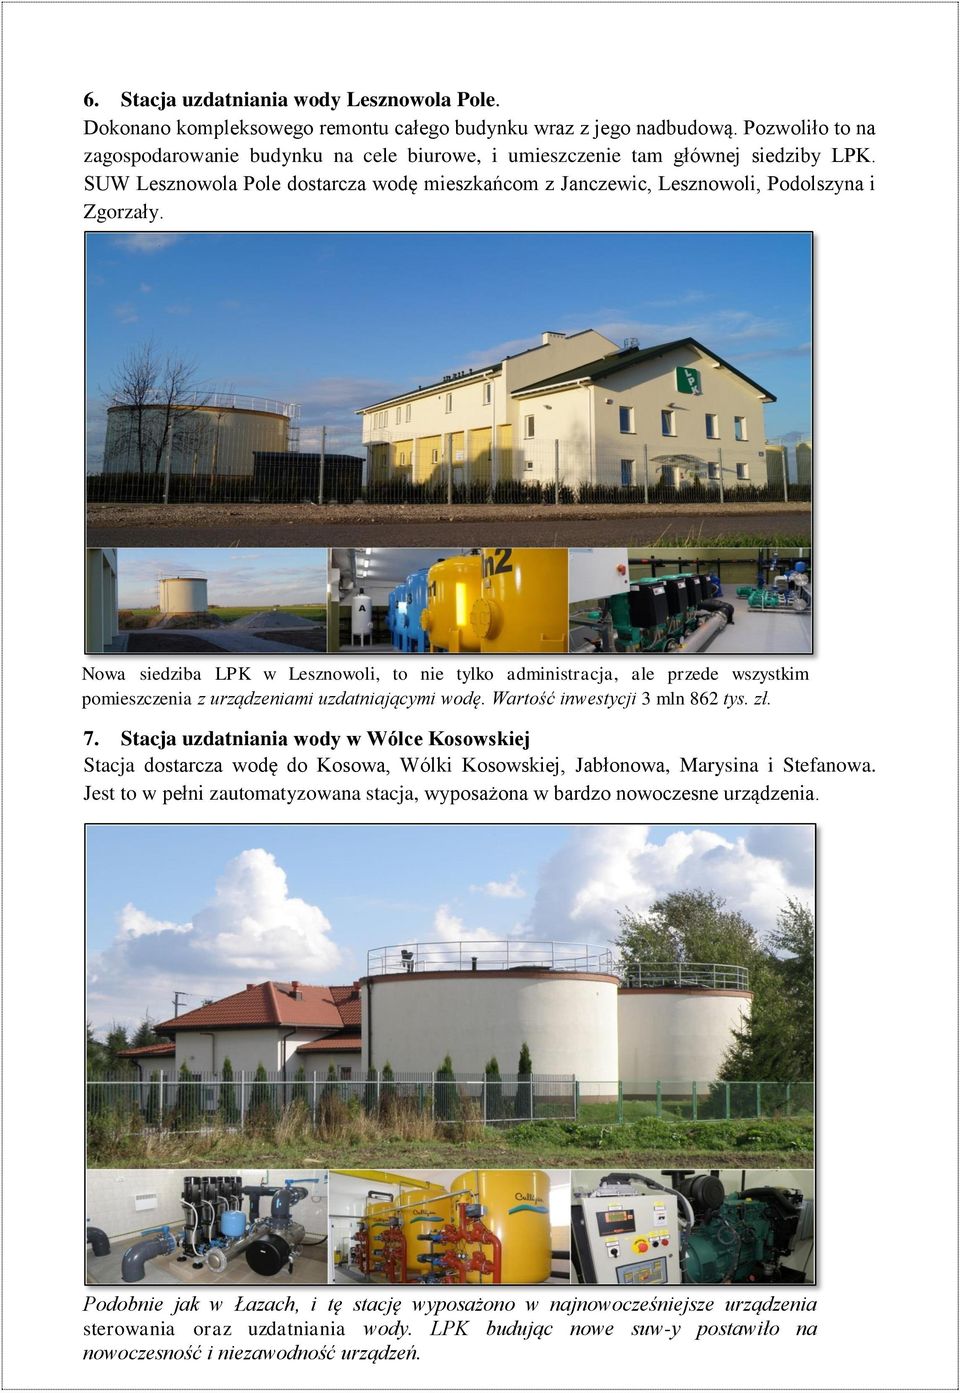 Nowa siedziba LPK w Lesznowoli, to nie tylko administracja, ale przede wszystkim pomieszczenia z urządzeniami uzdatniającymi wodę. Wartość inwestycji 3 mln 862 tys. zł. 7.